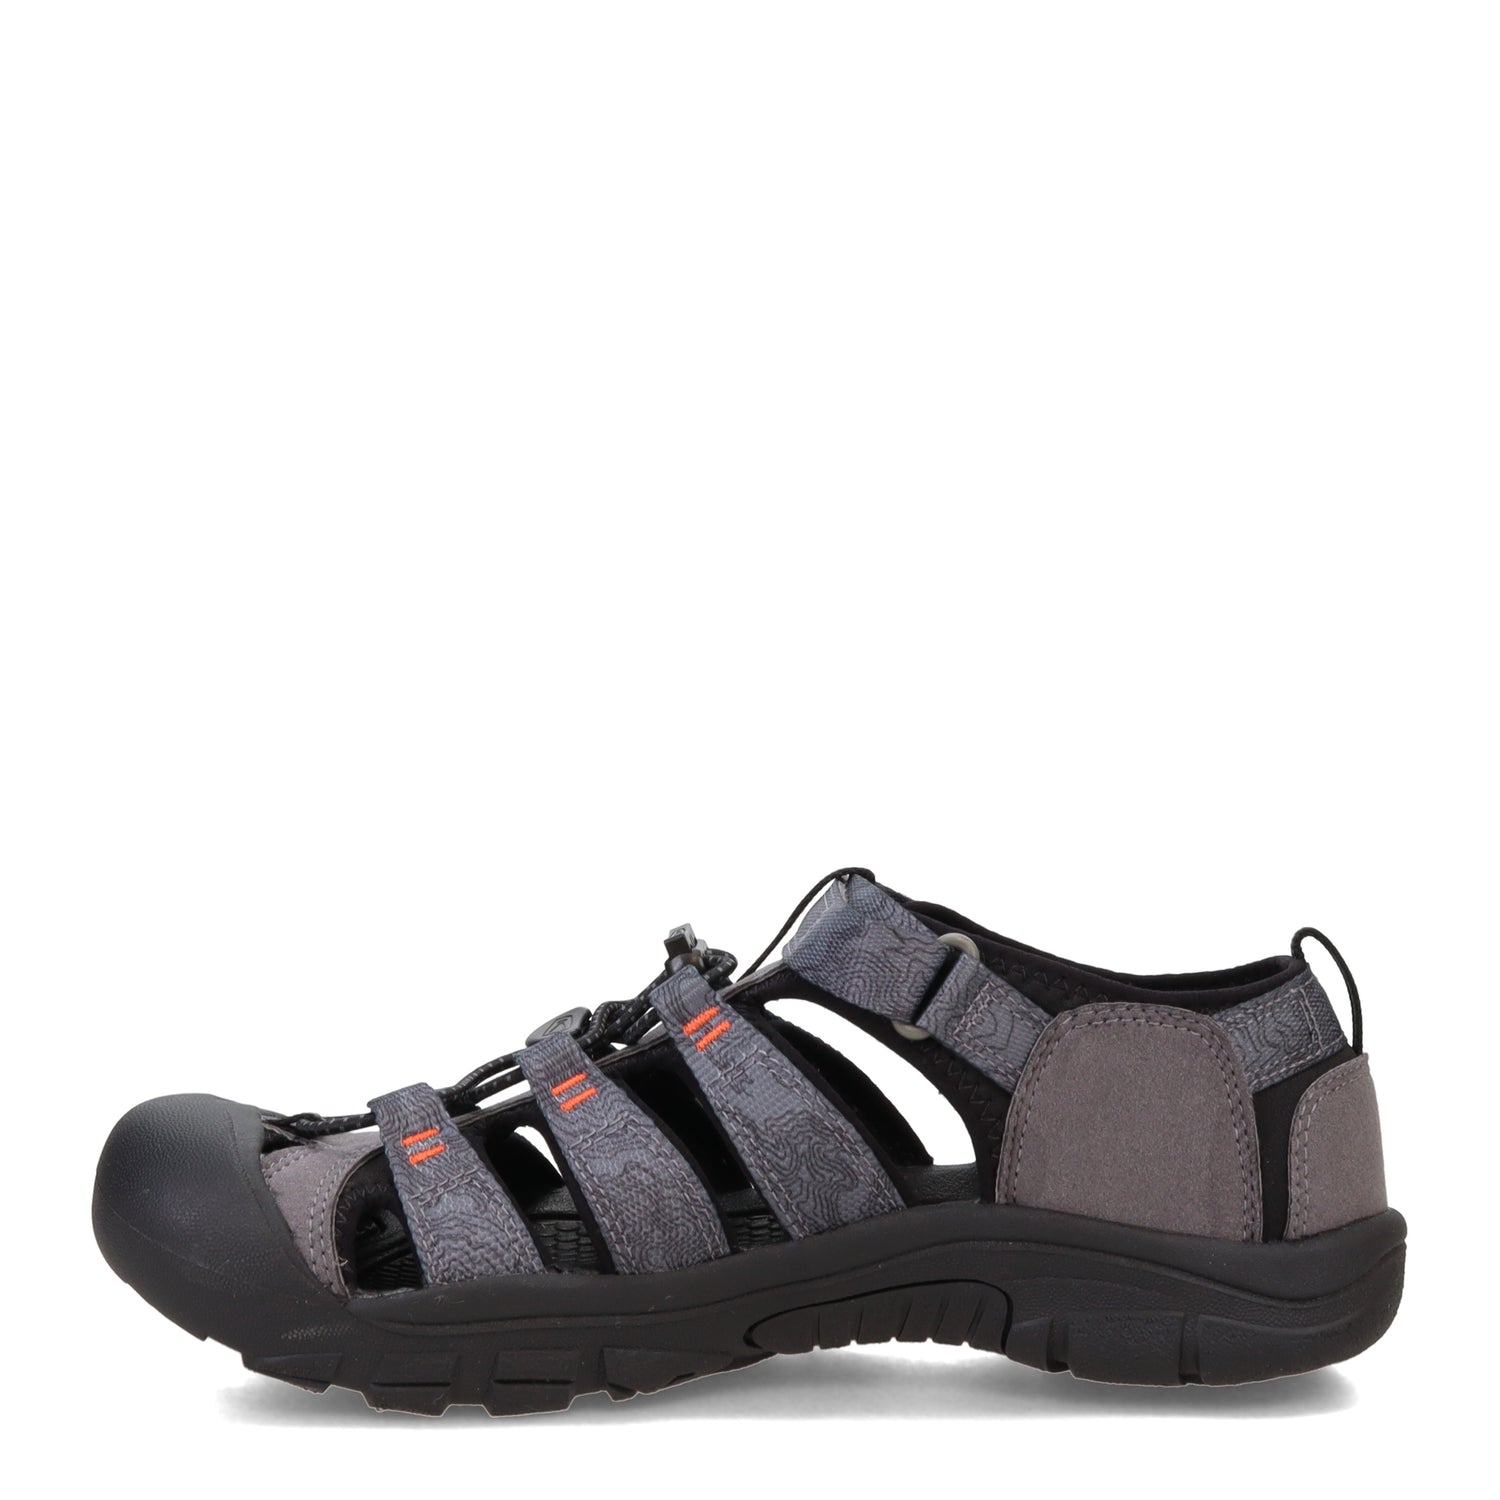 Peltz Shoes  Boy's KEEN Newport H2 Waterproof Sandal - Little Kid & Big Kid Steel Grey/Black 1026277